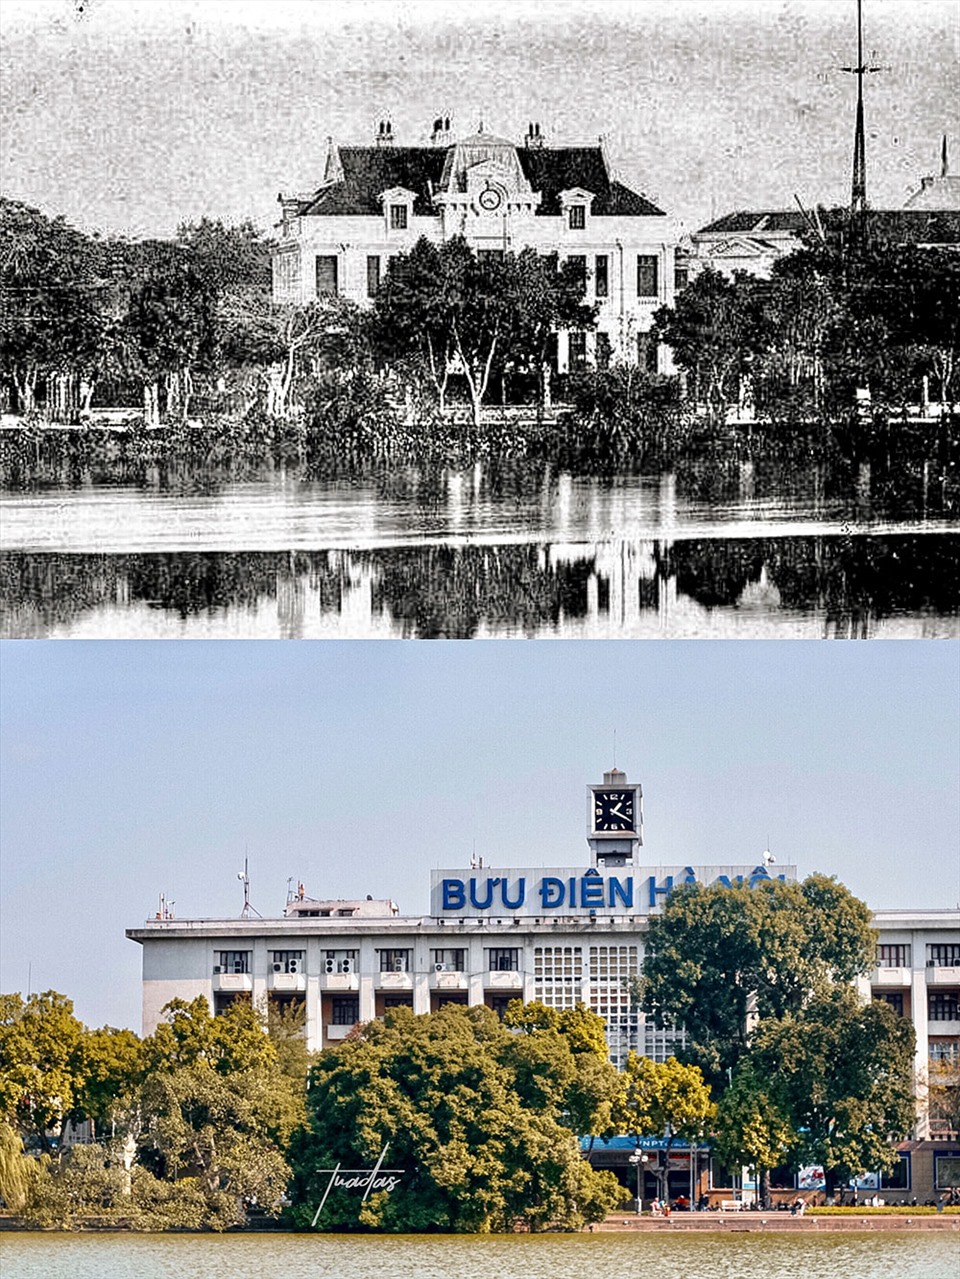 Bưu điện Hà Nội 100 năm trước - 2014.